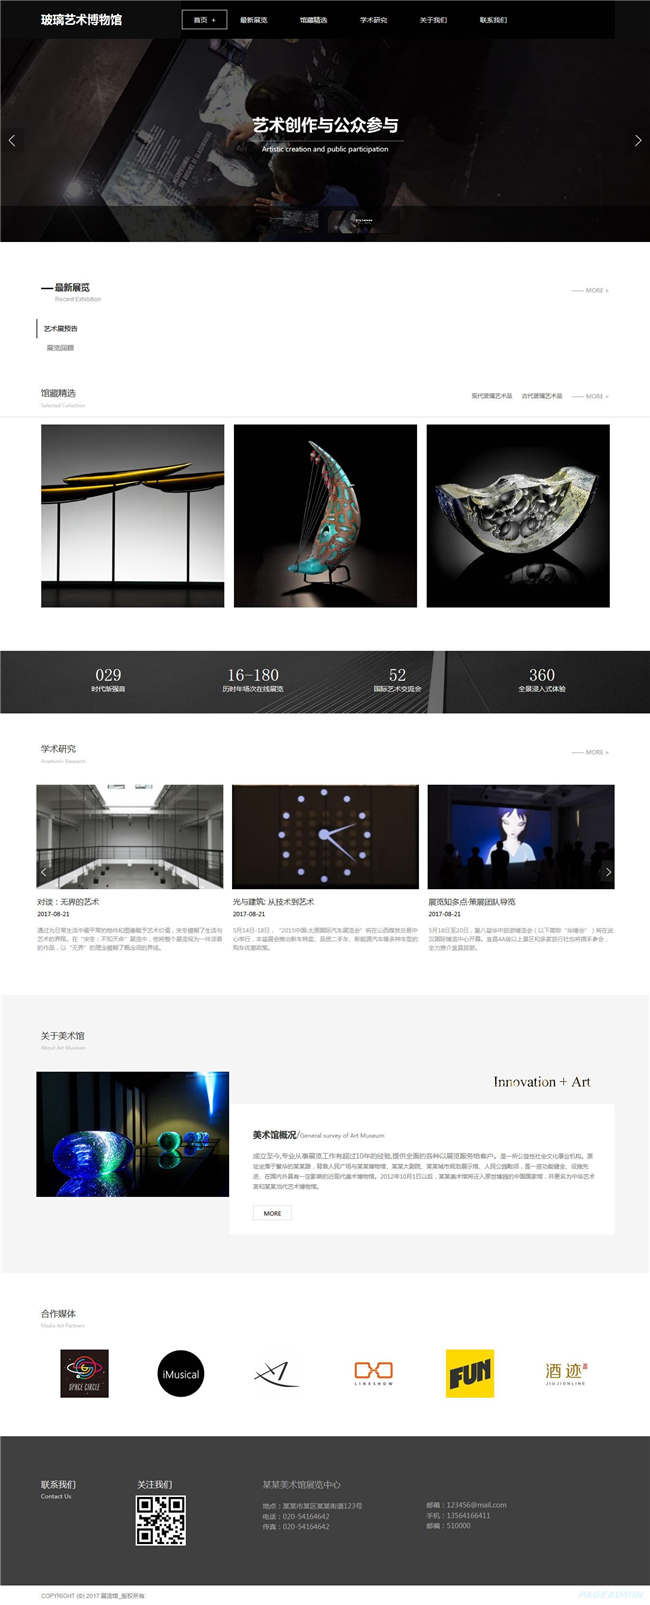 美术馆展览广告传媒设计网站WordPress模板含手机站演示图